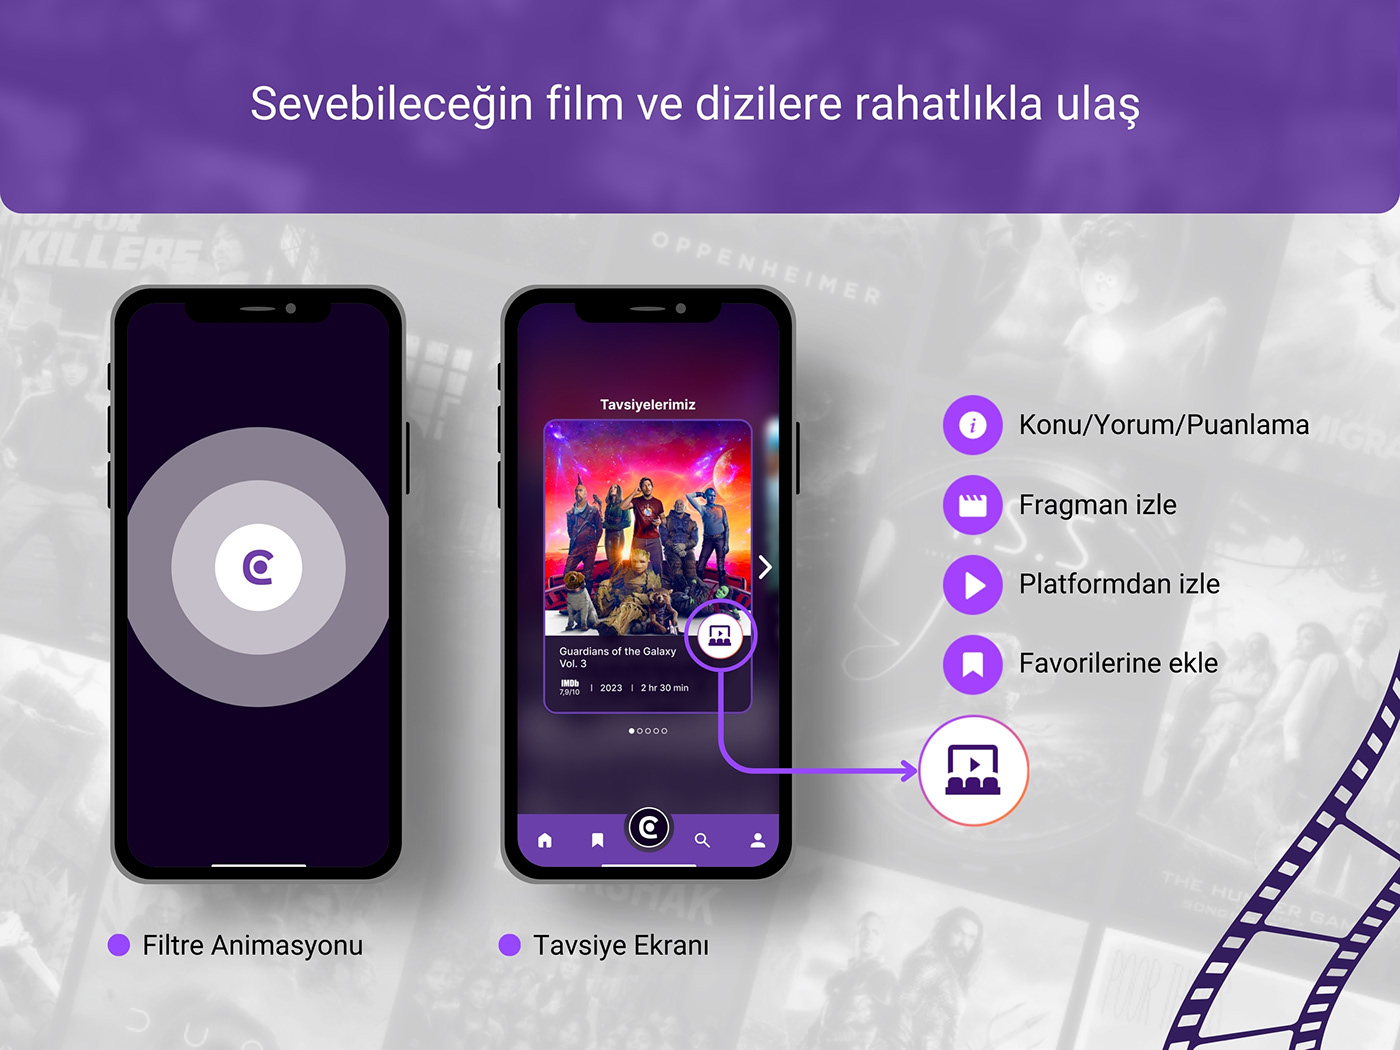 UI/UX ui design UX design Figma Mobile app user interface Experience movie app